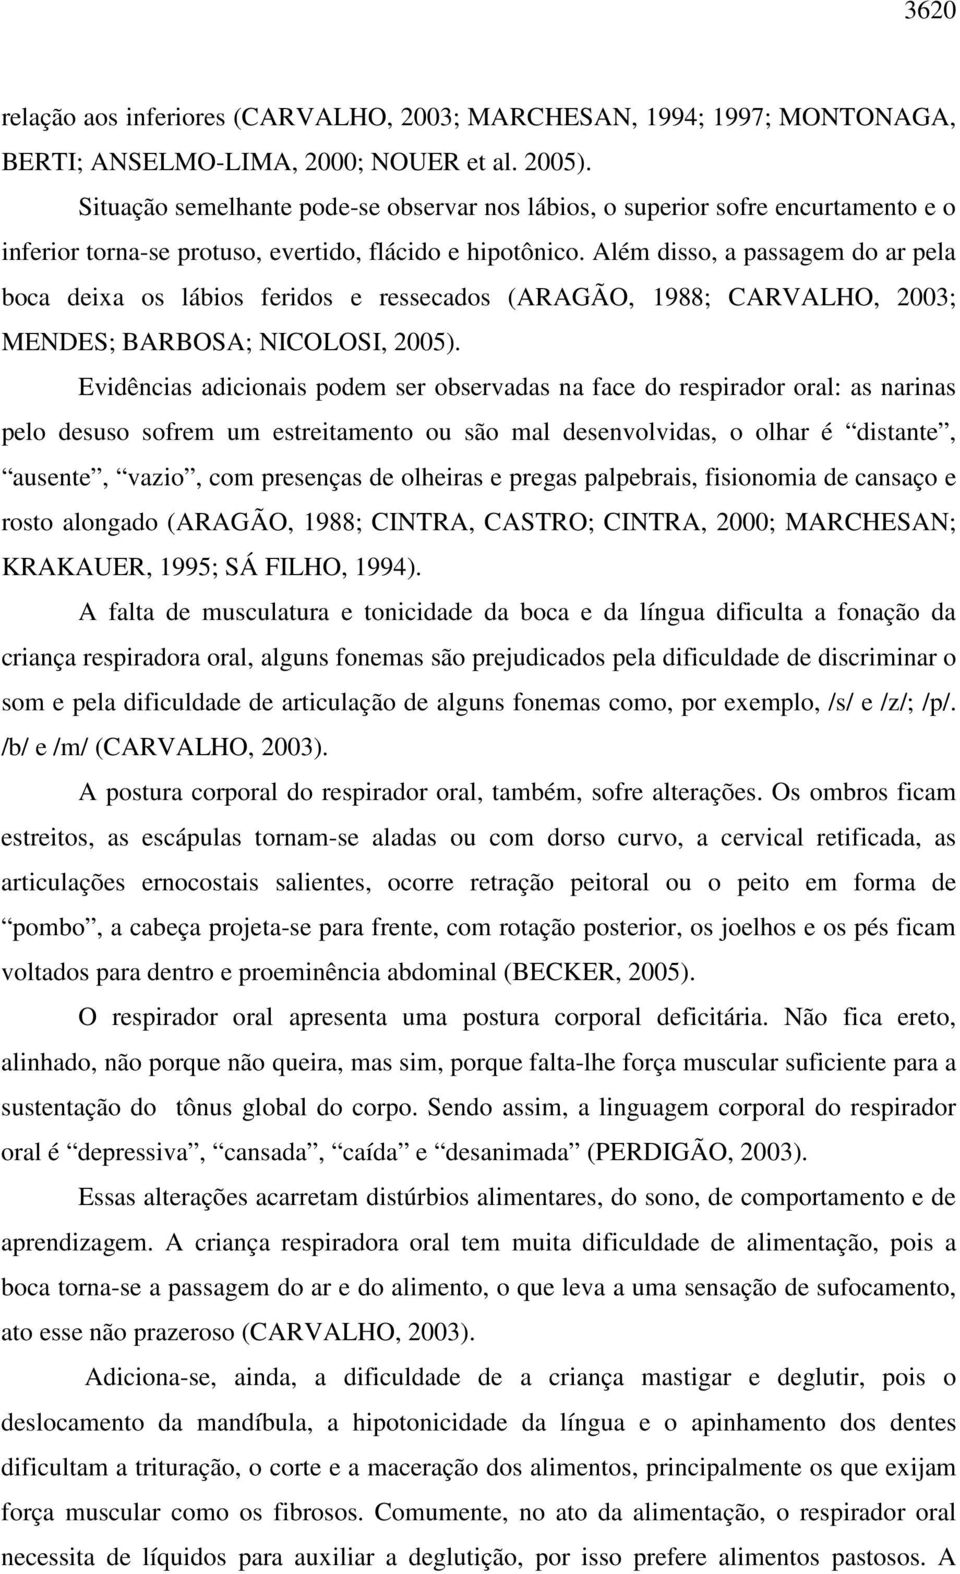 Além disso, a passagem do ar pela boca deixa os lábios feridos e ressecados (ARAGÃO, 1988; CARVALHO, 2003; MENDES; BARBOSA; NICOLOSI, 2005).